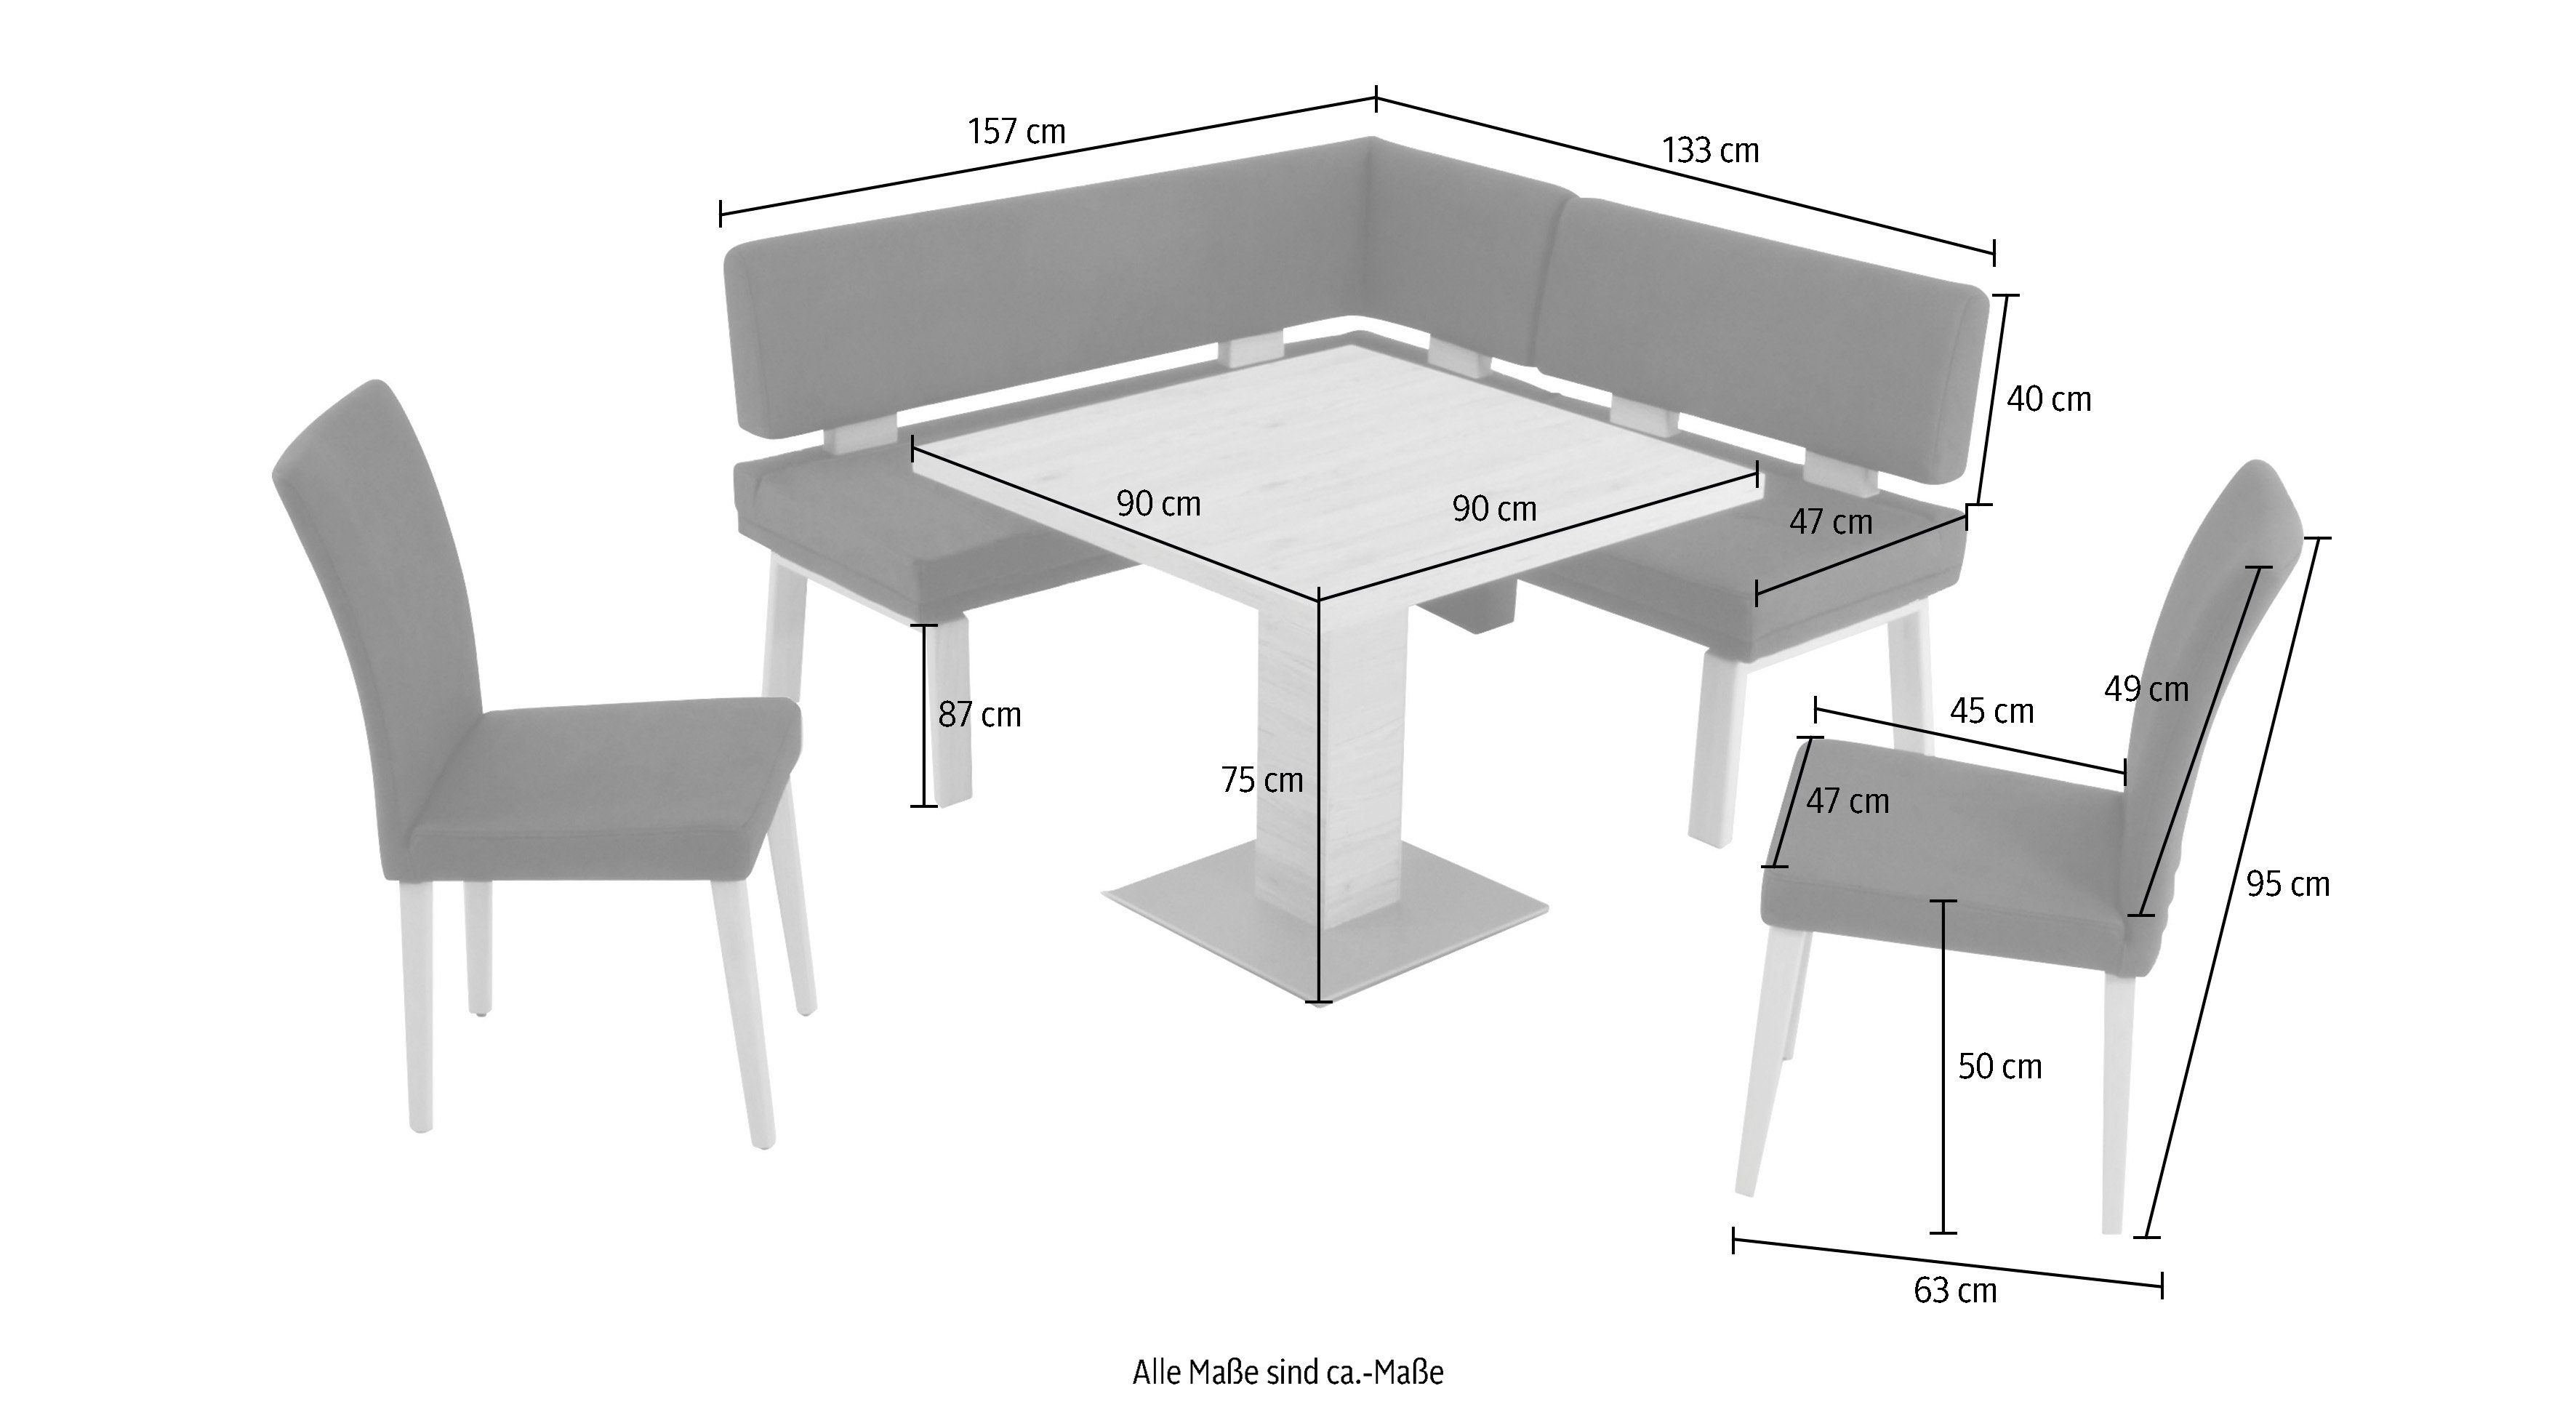 K+W Komfort & Wohnen Eiche und 157cm, lightgrey gleichschenklig 90x90cm, 4-Fußholzstühle zwei I, Eckbankgruppe Tisch Santos